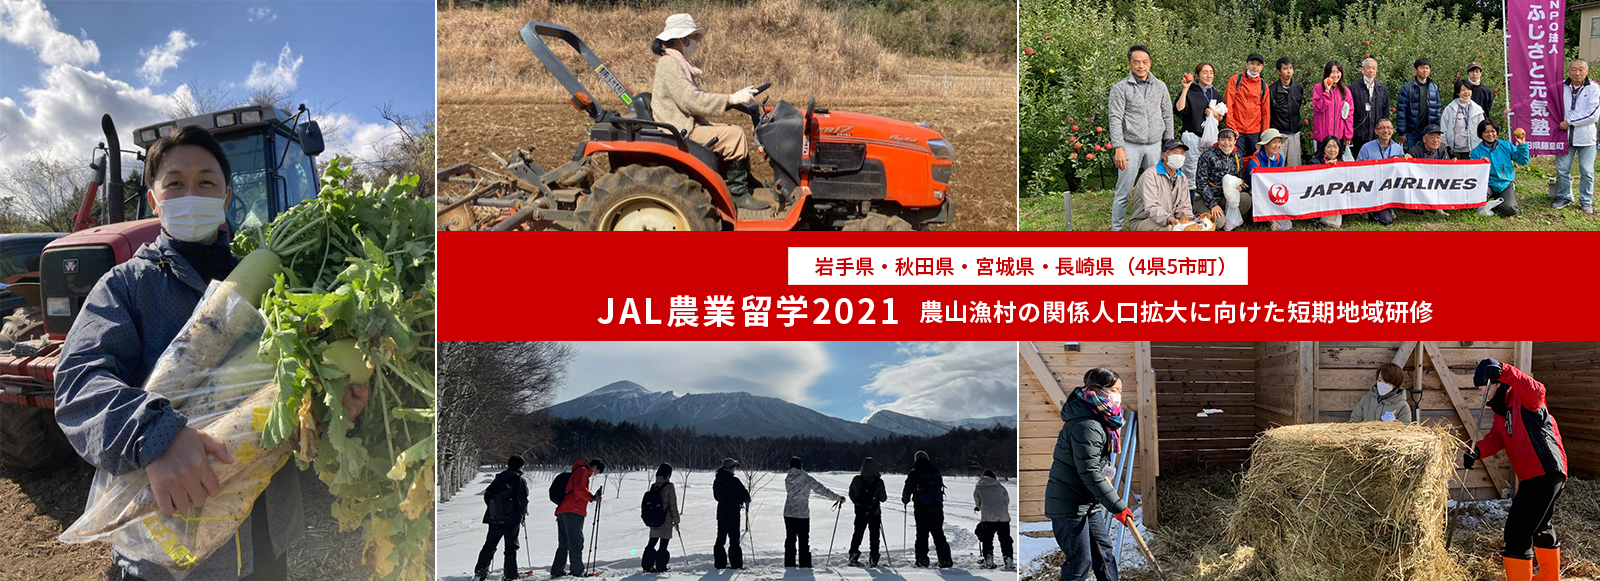 農山漁村の関係人口拡大に向けた短期地域研修 JAL農業留学2021
